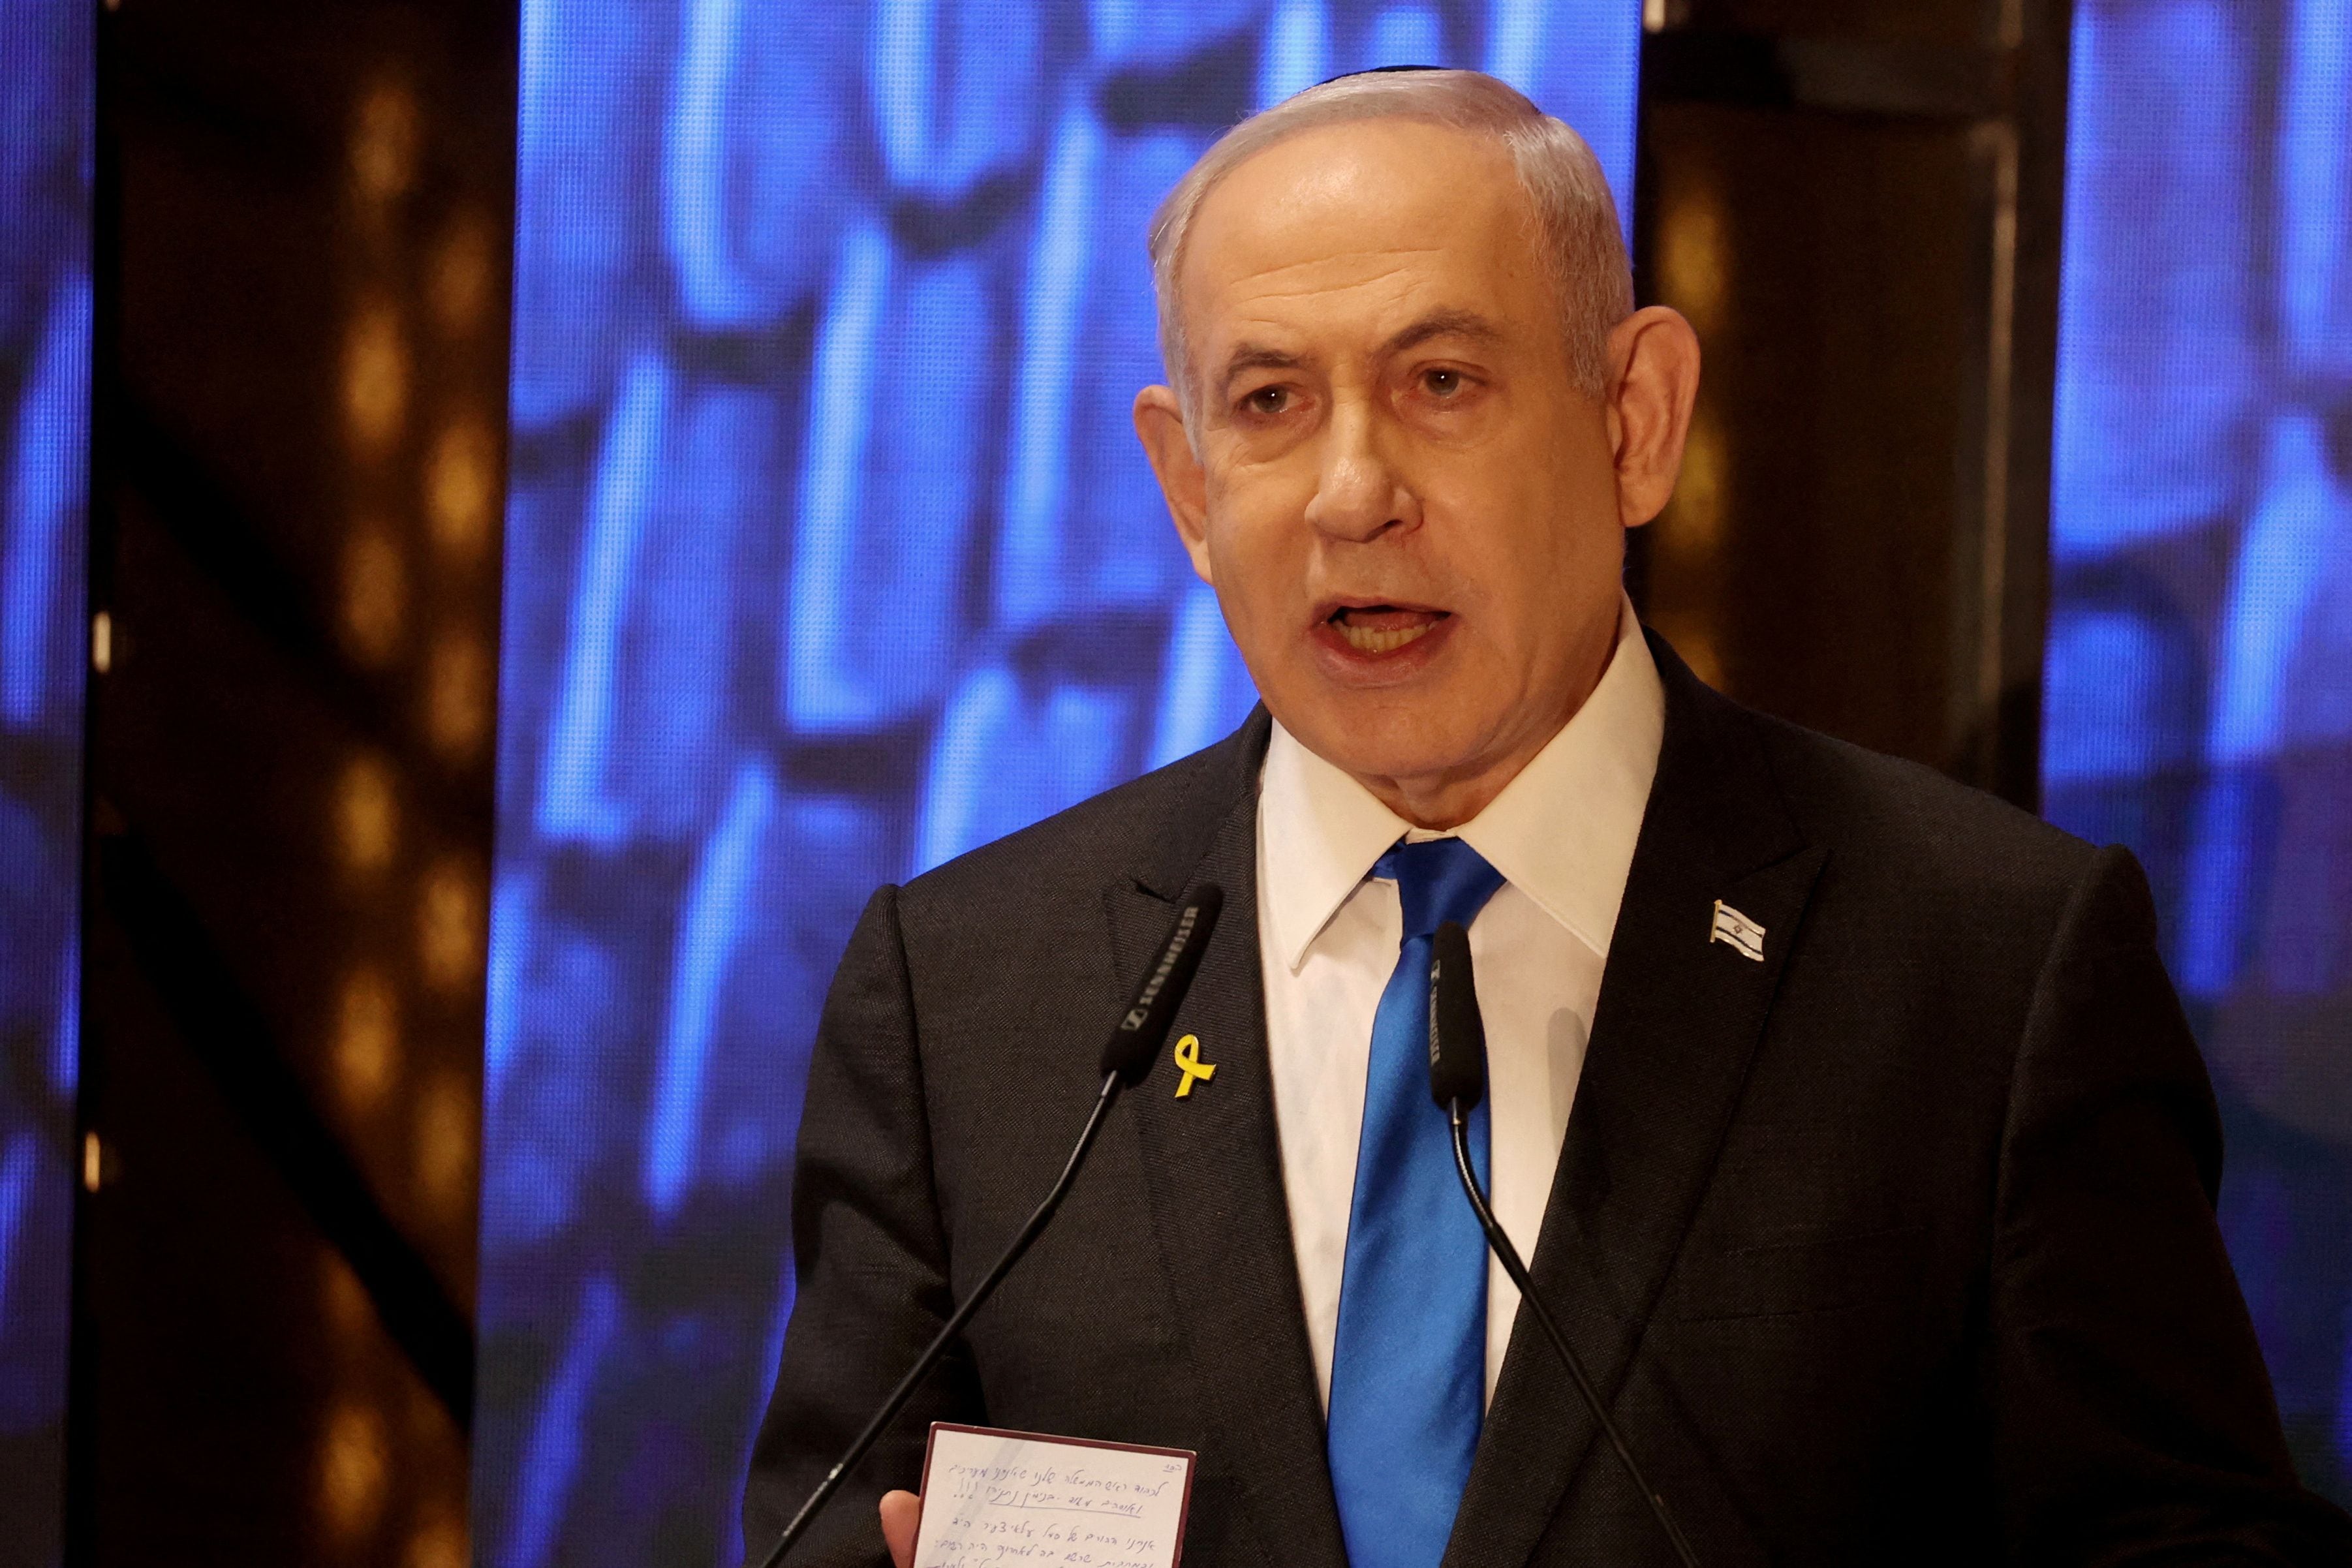 La orden de detención contra Netanyahu, una decisión dolorosa en lo práctico y lo simbólico